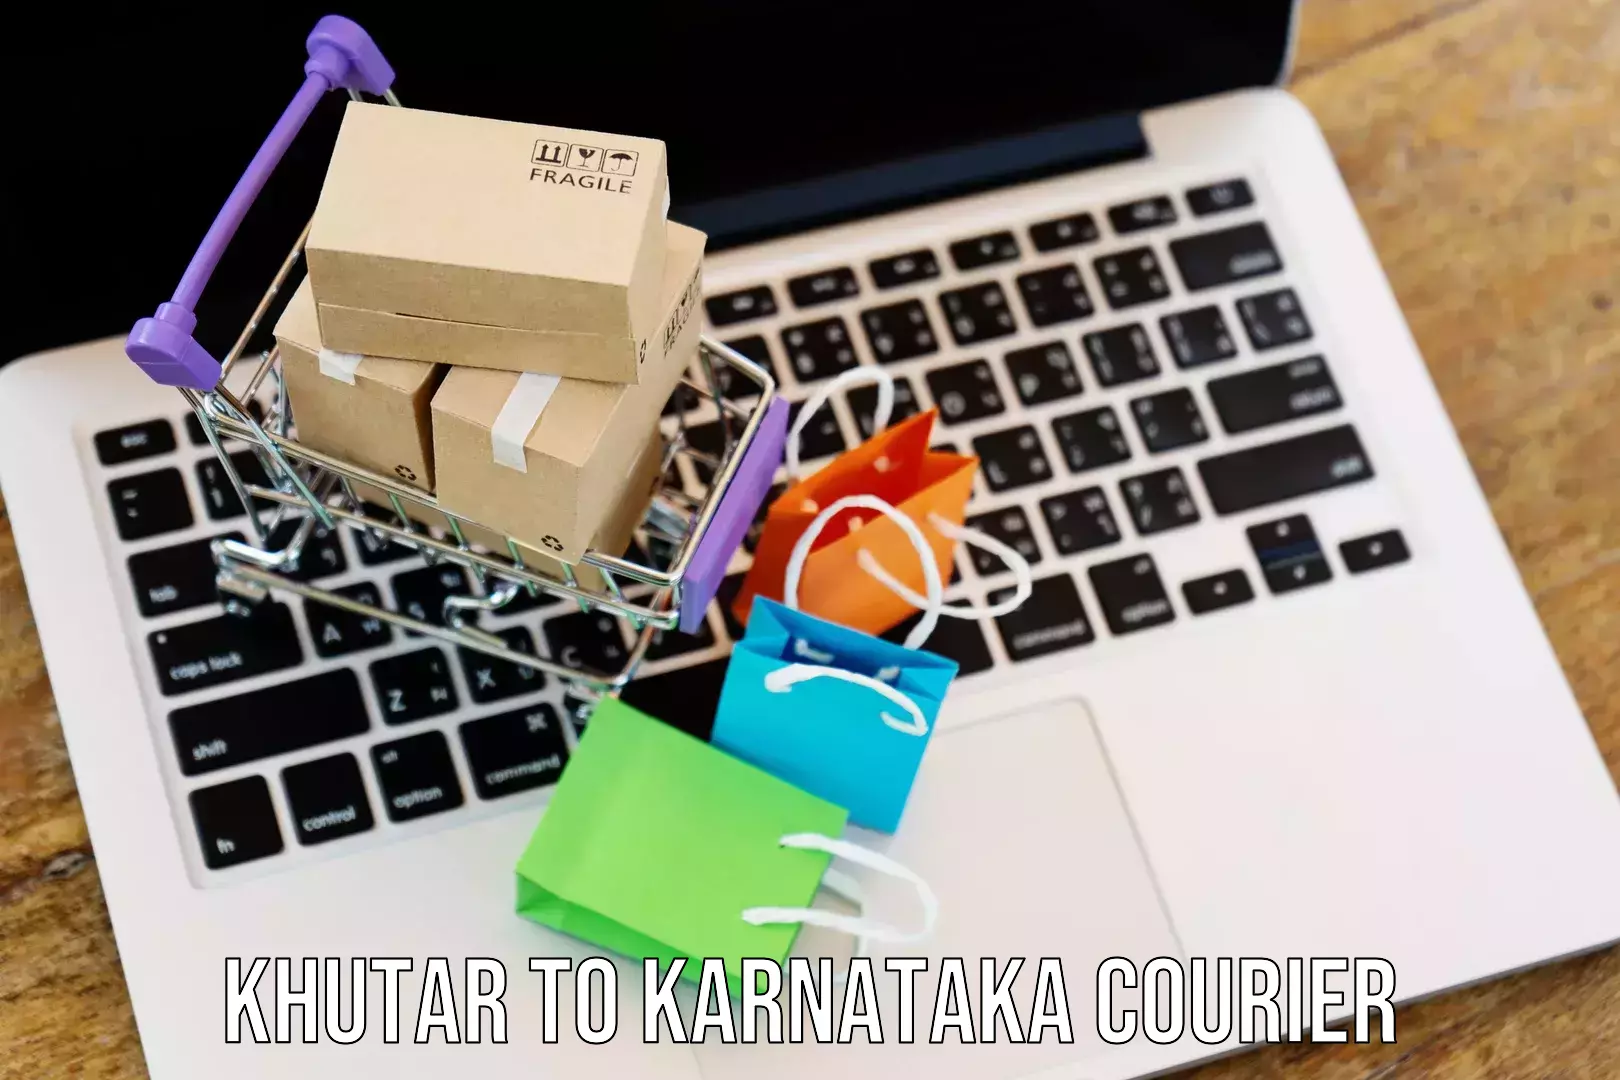 Customer-centric shipping Khutar to Karnataka